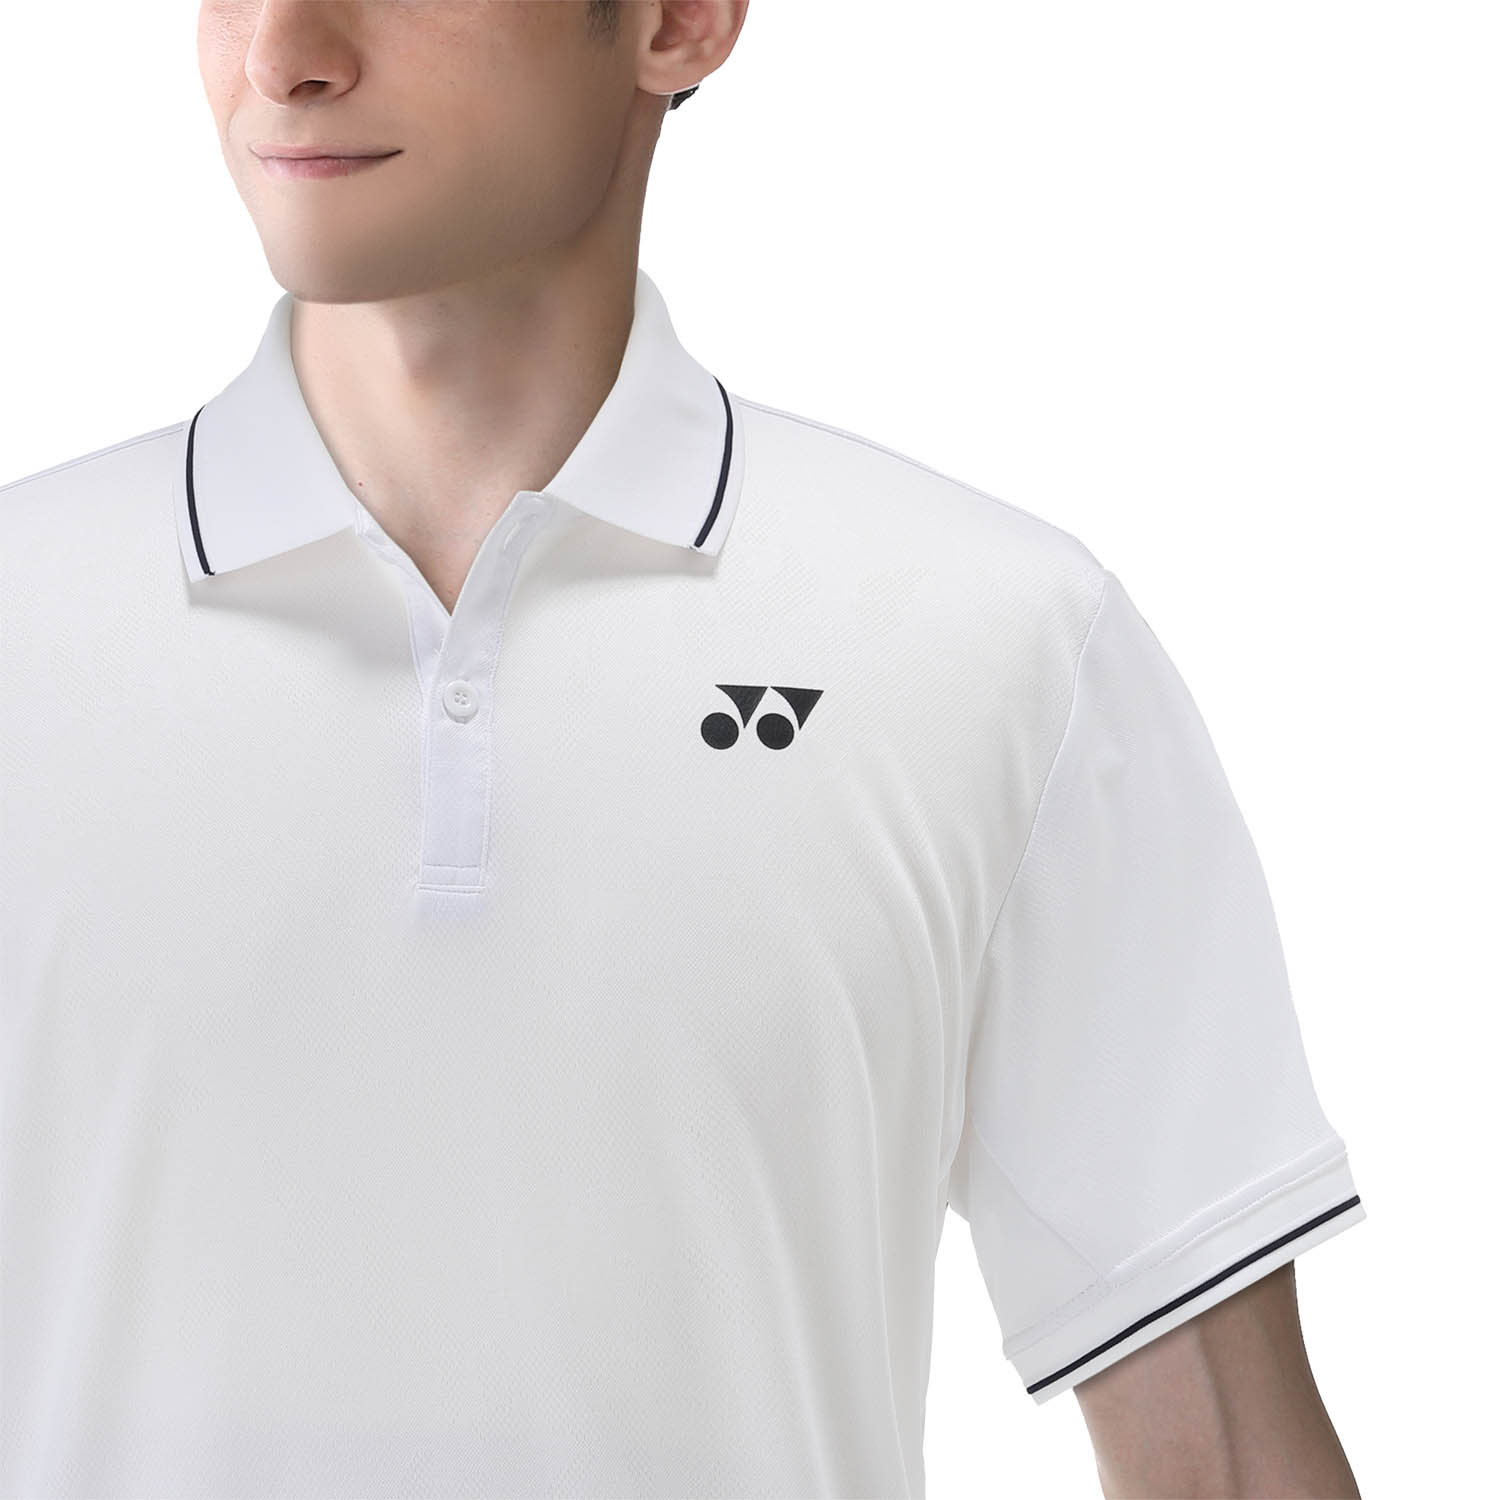 Yonex Tournament Polo - White